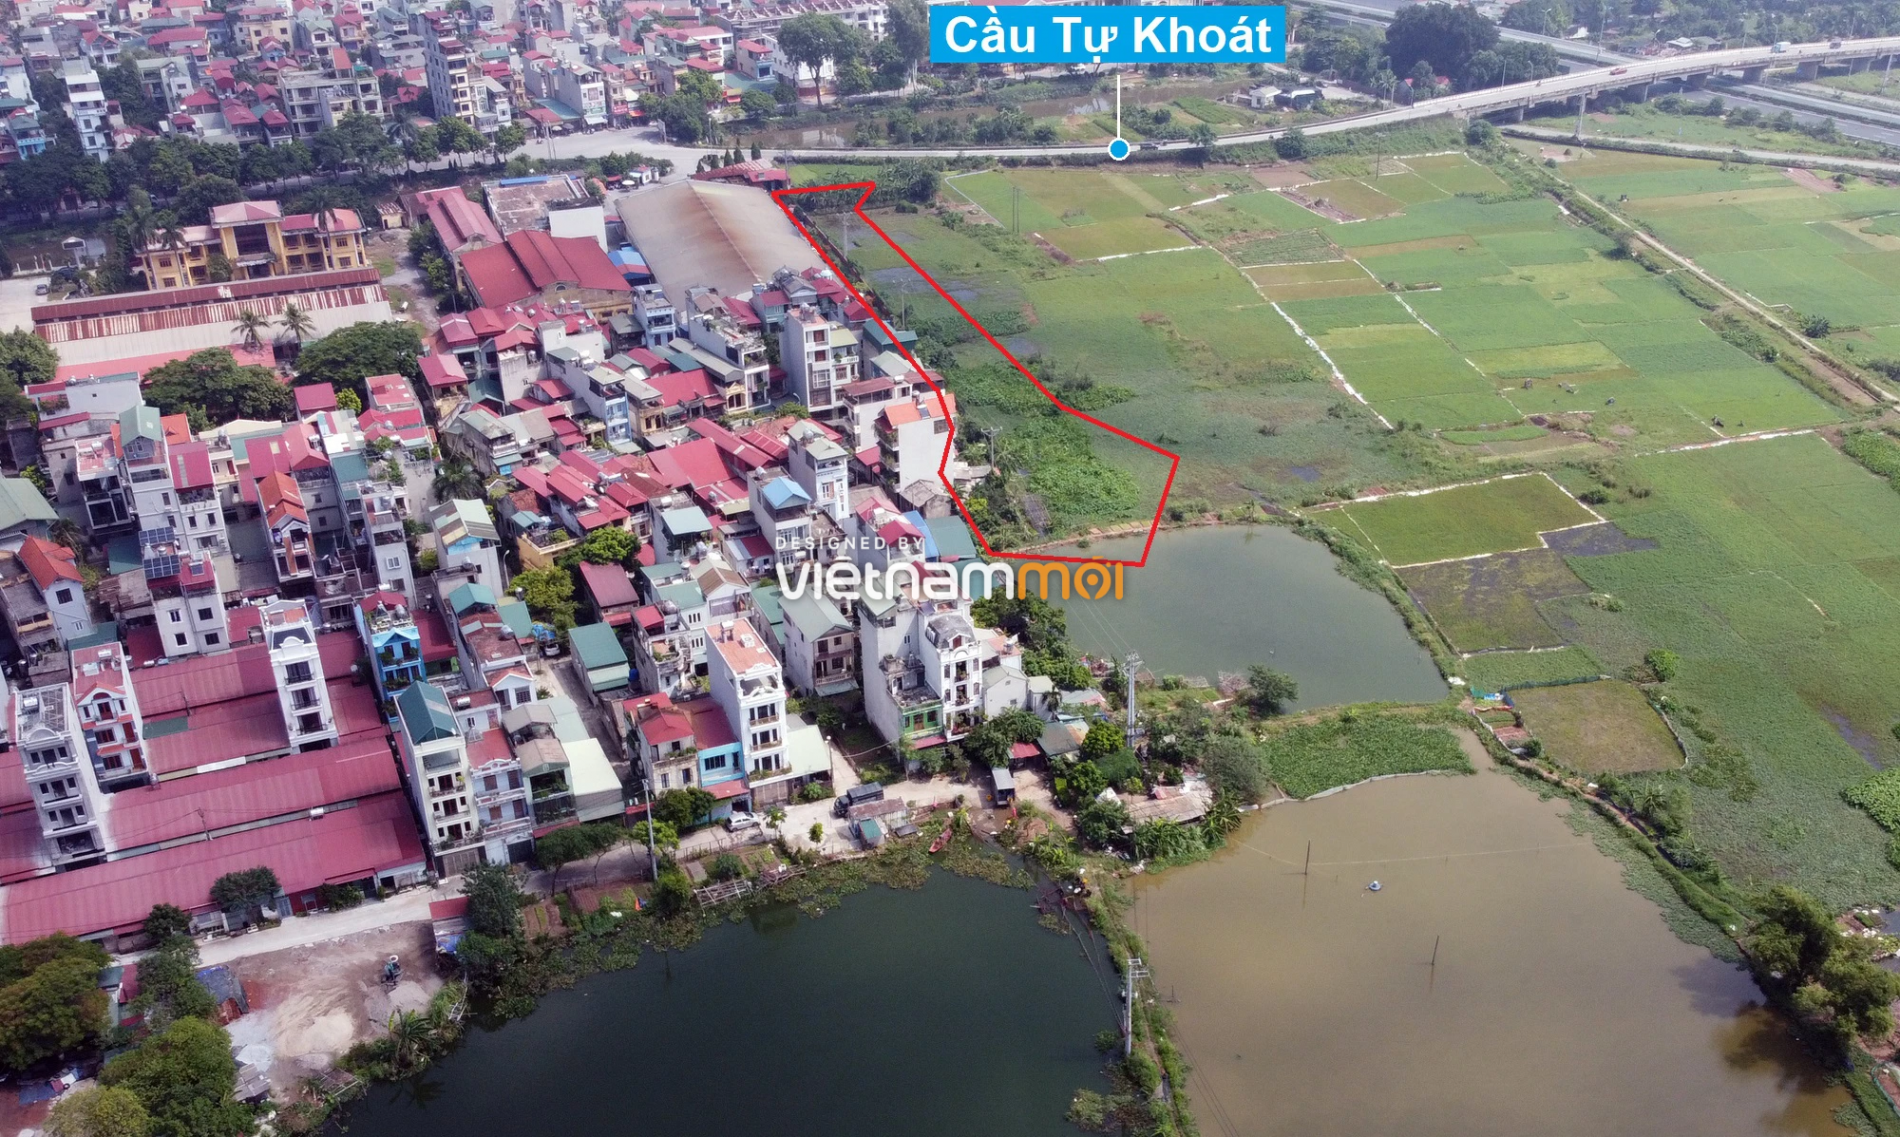 Những khu đất sắp thu hồi để mở đường ở xã Ngọc Hồi, Thanh Trì, Hà Nội (phần 1) - Ảnh 17.